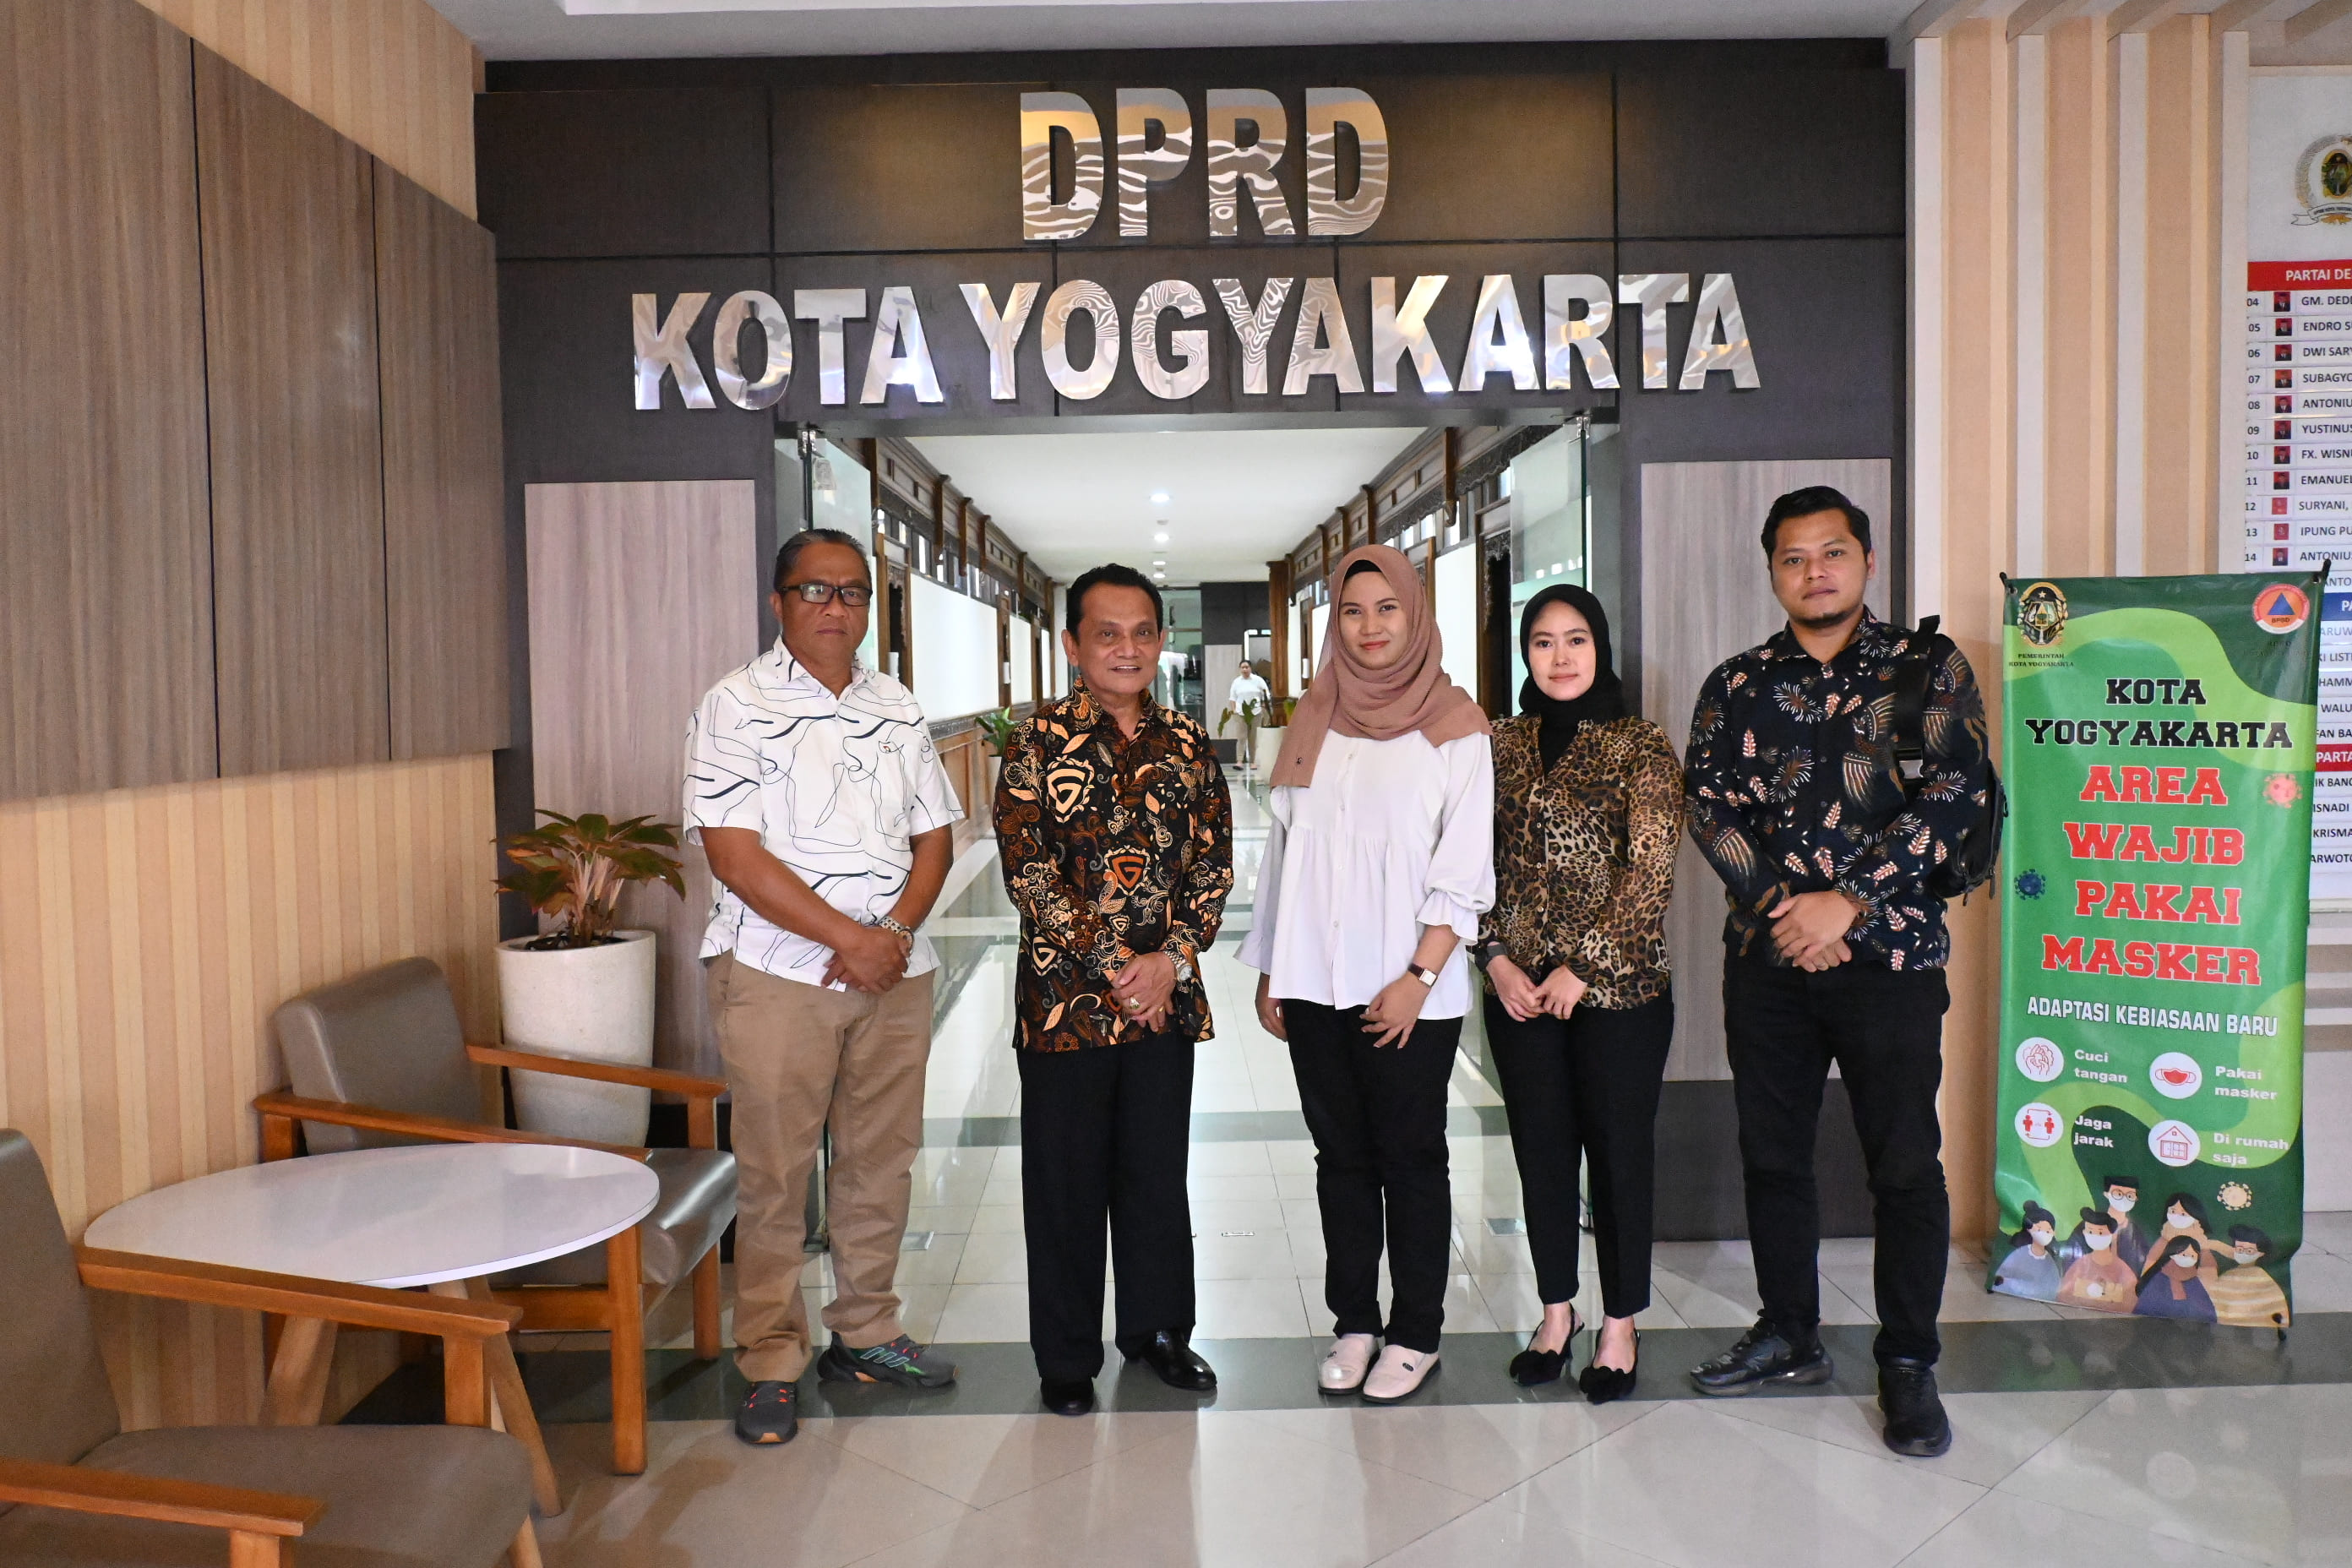 Sekretariat Dewan Kota Yogyakarta Terima Kunjungan Kerja dari DPRD Kabupaten Pagar Alam